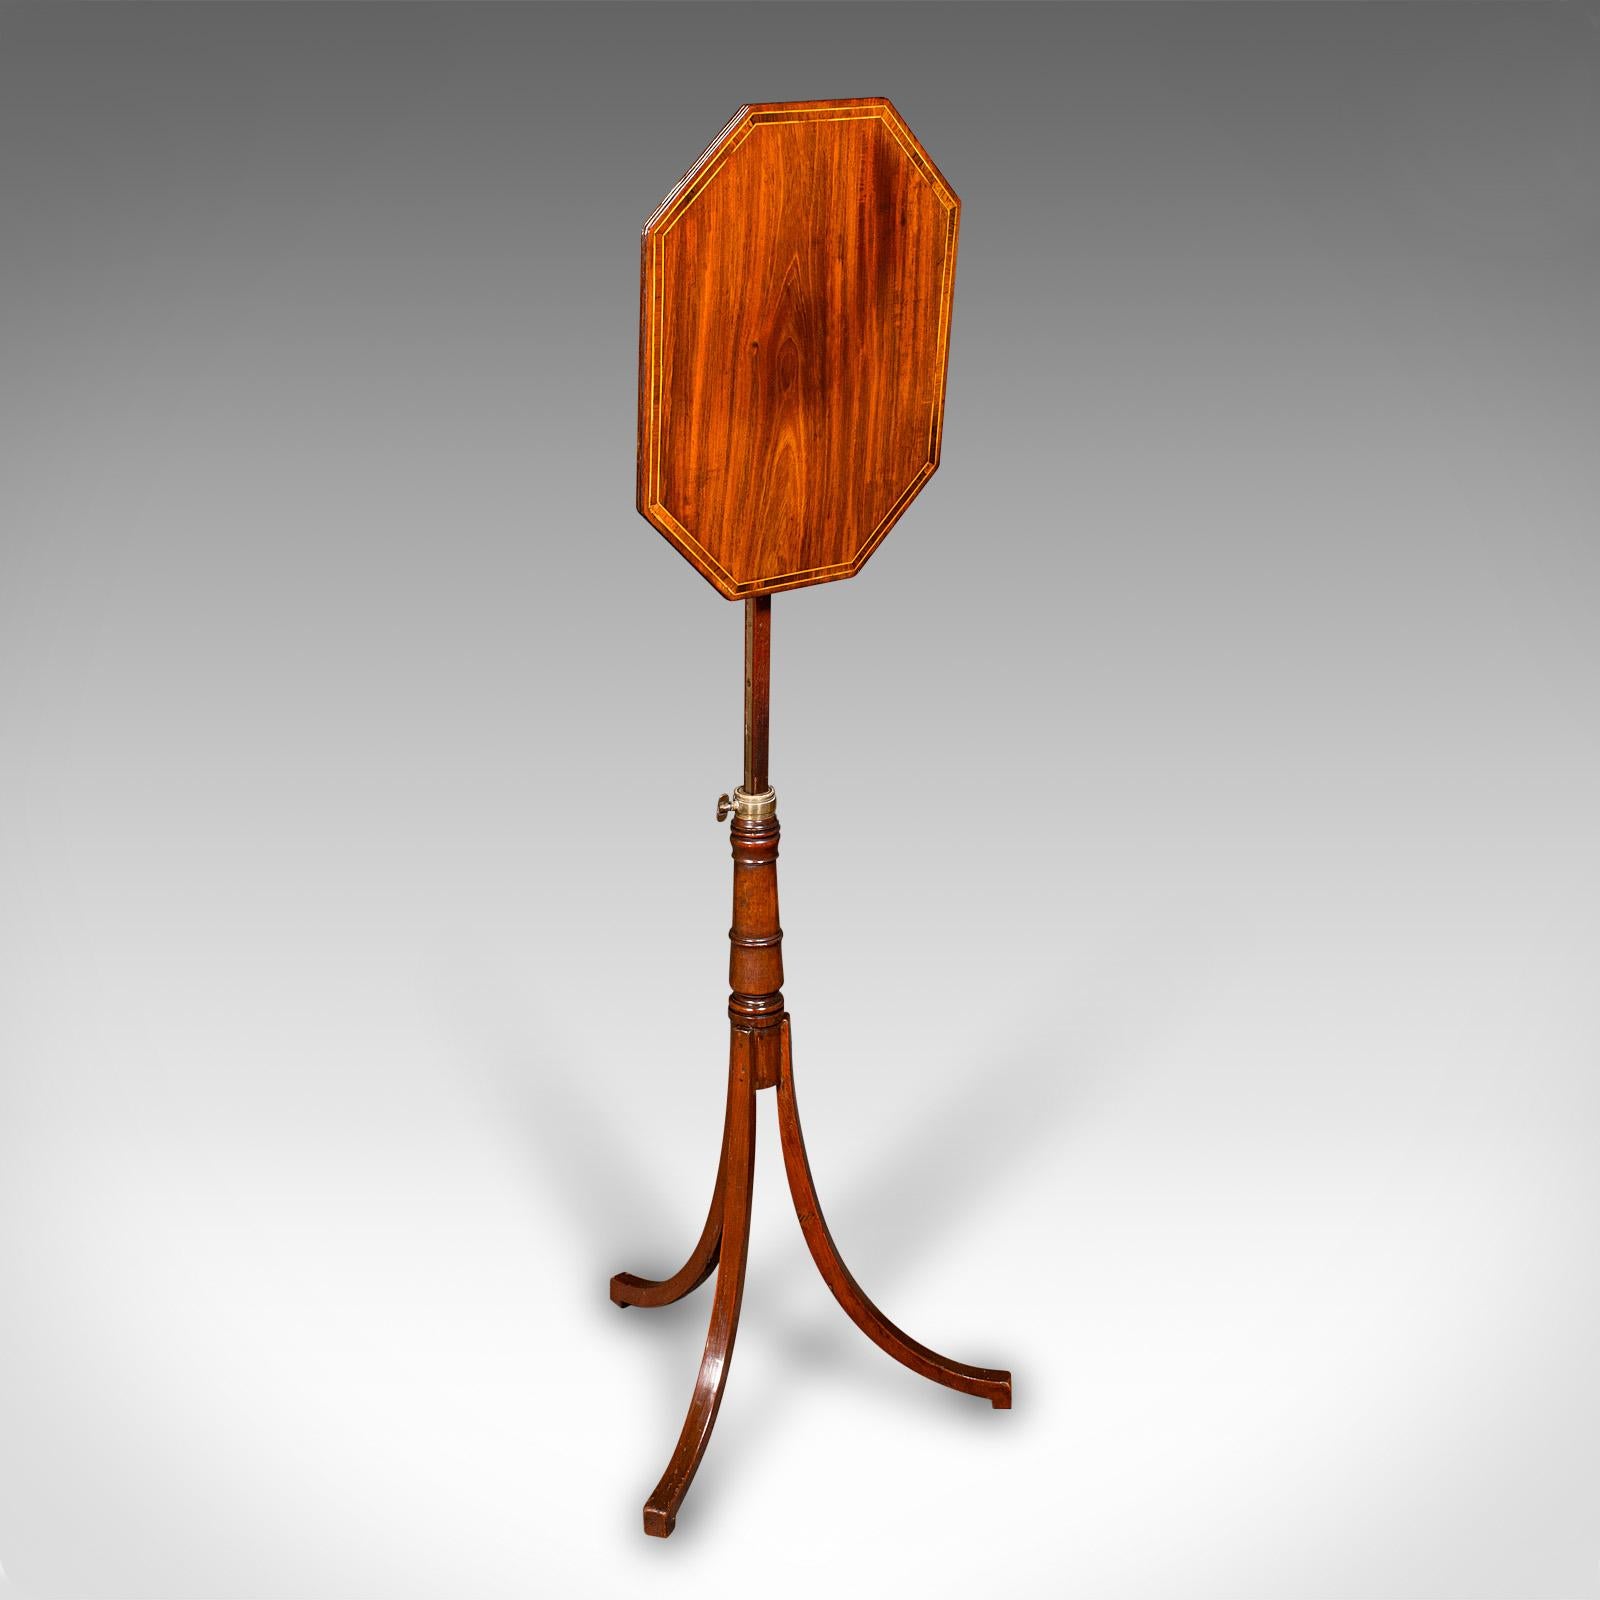 Dies ist ein antiker metamorpher Weintisch. Ein englischer Beistell- oder Lampentisch aus Mahagoni, aus der Regency-Zeit, um 1820.

Eleganter metamorpher Tisch mit hervorragender Maserung und Farbe
Zeigt eine wünschenswerte gealterte Patina und in